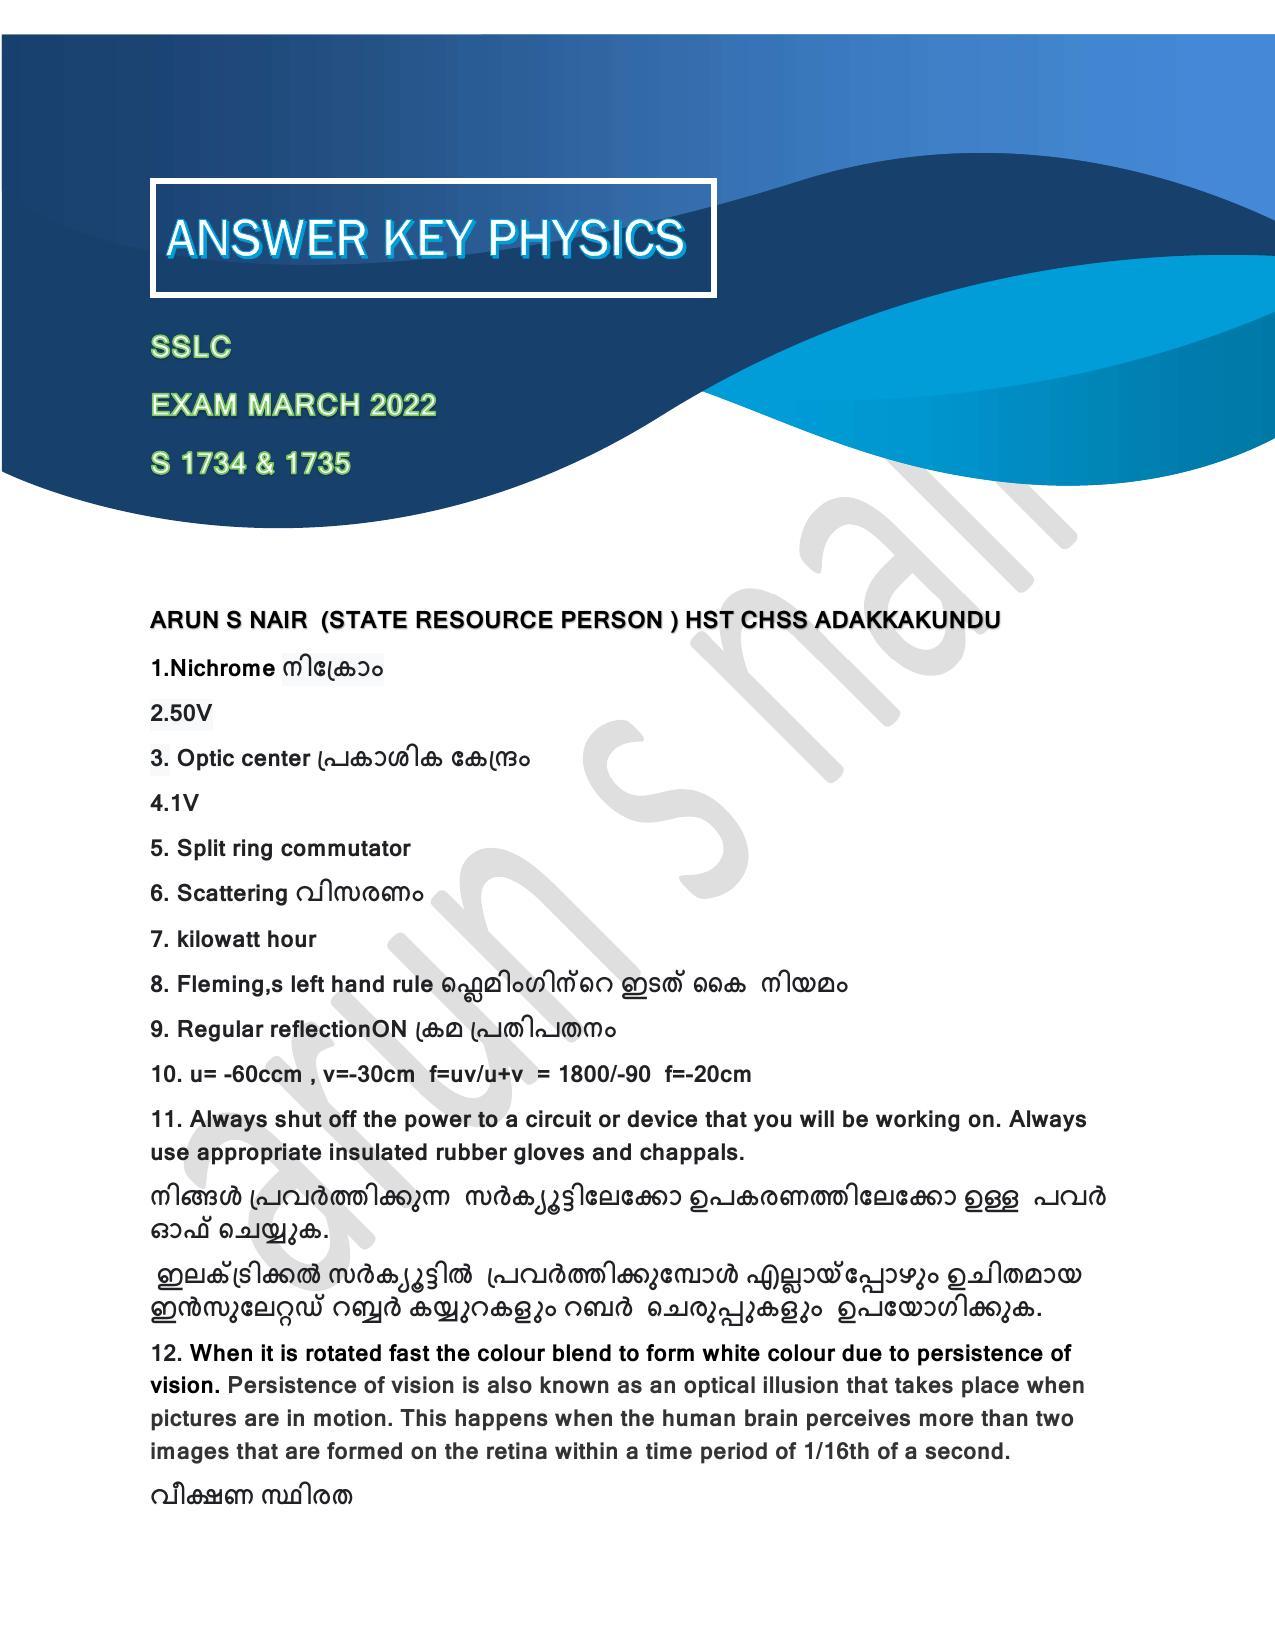 Kerala SSLC 2022 Physics Answer Key (Annual) - Page 1